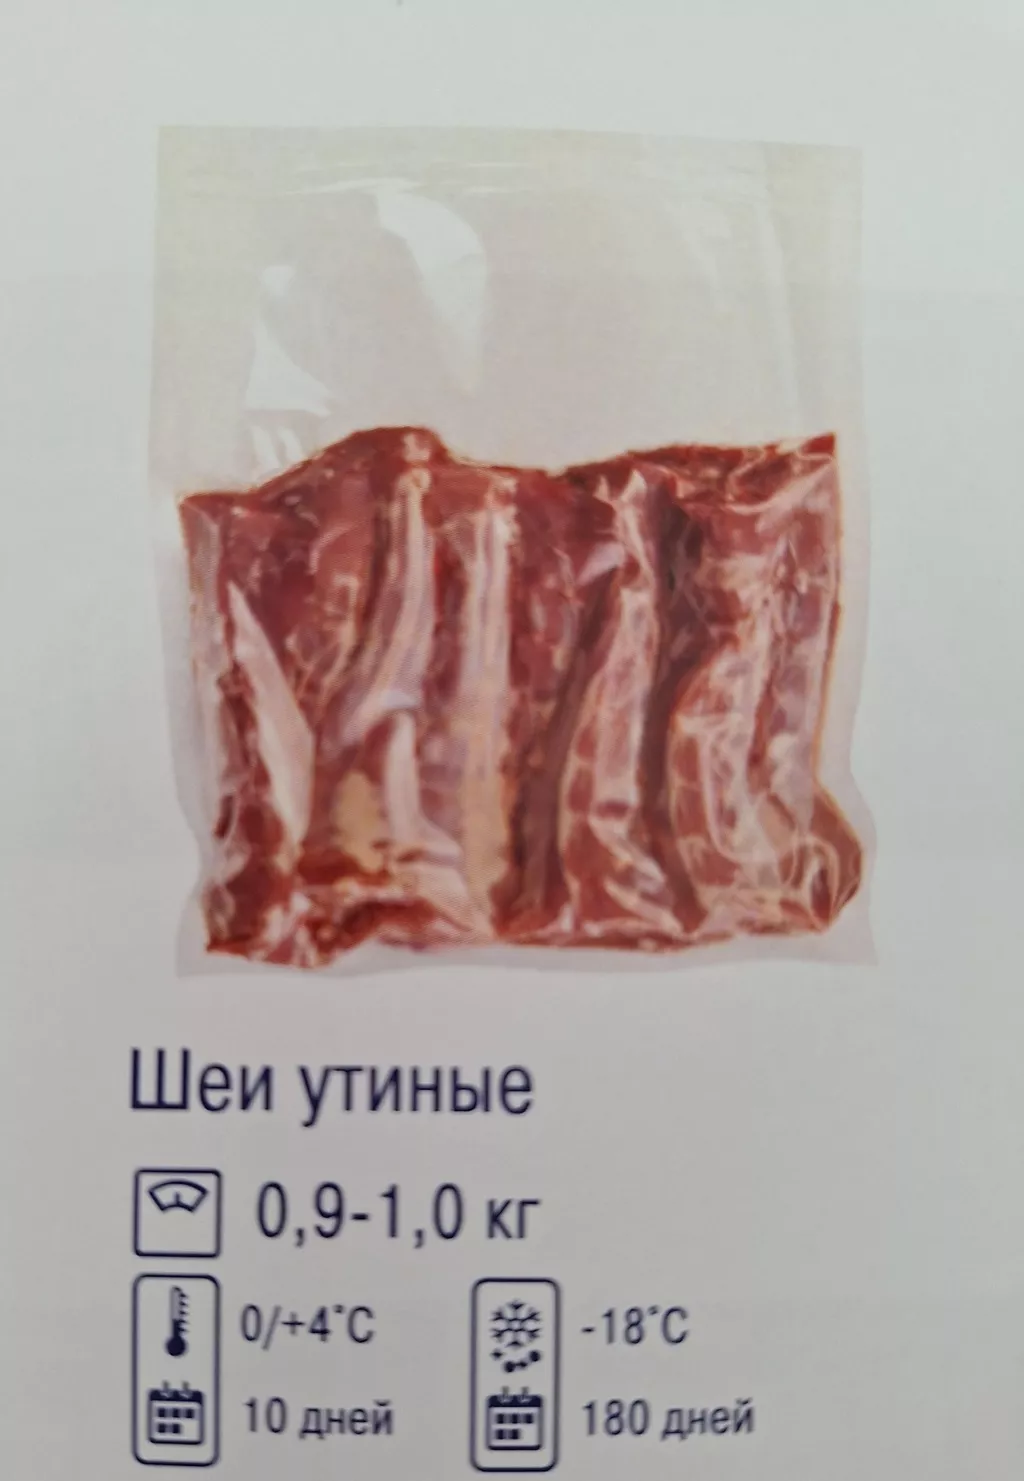 мясо утенка в Ростове-на-Дону и Ростовской области 2